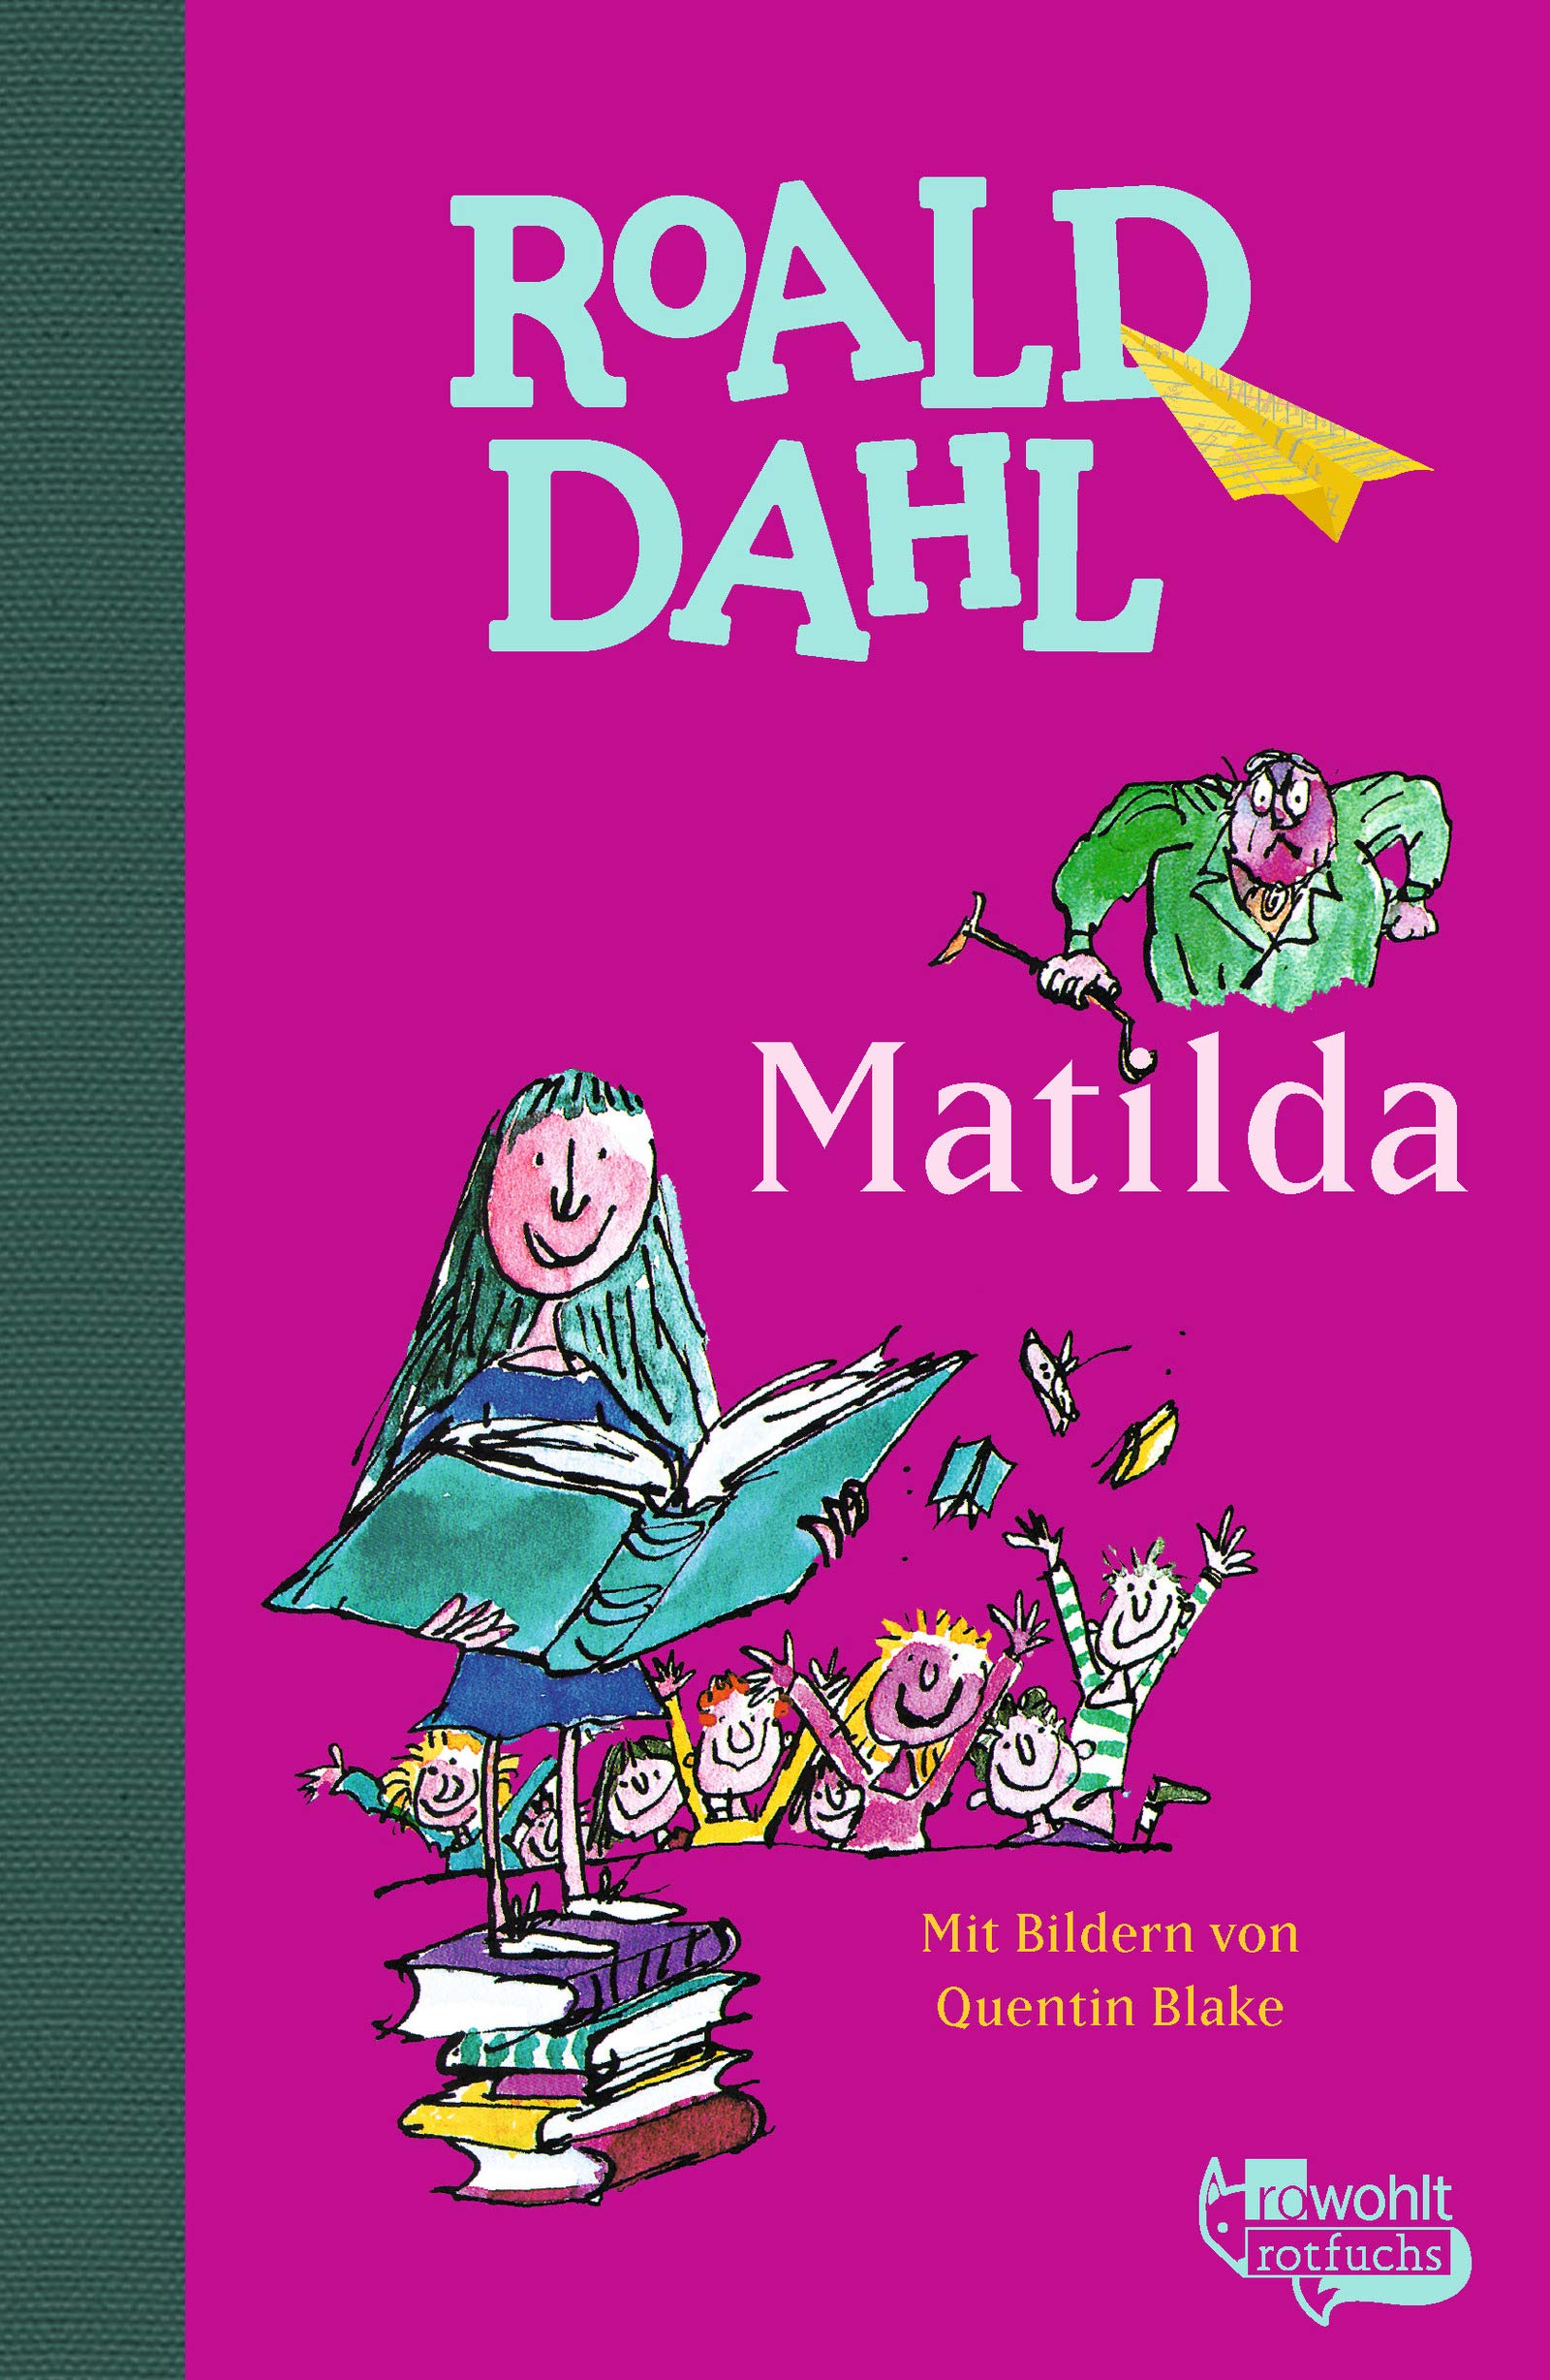 Matilda roald dahl. Dahl Roald "Matilda". Matilda de Roald Dahl. Matilda book.